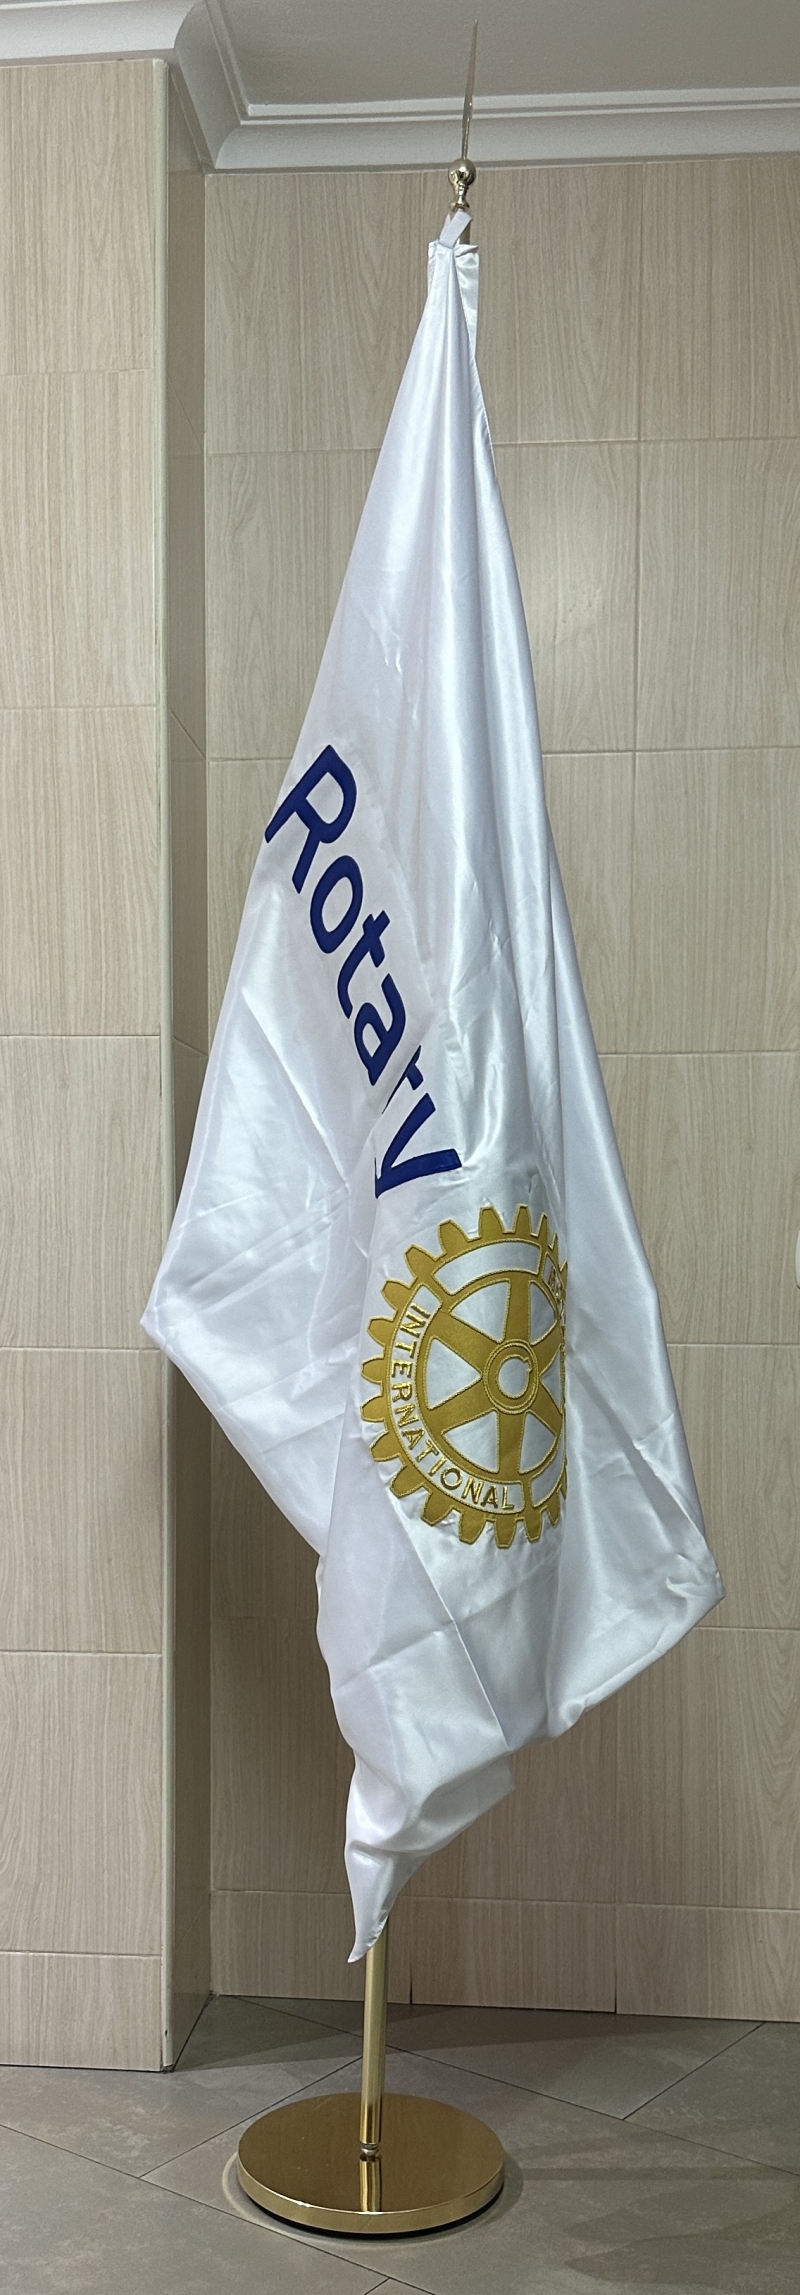 Producto Bandera Escudo Rotary bordada a mano